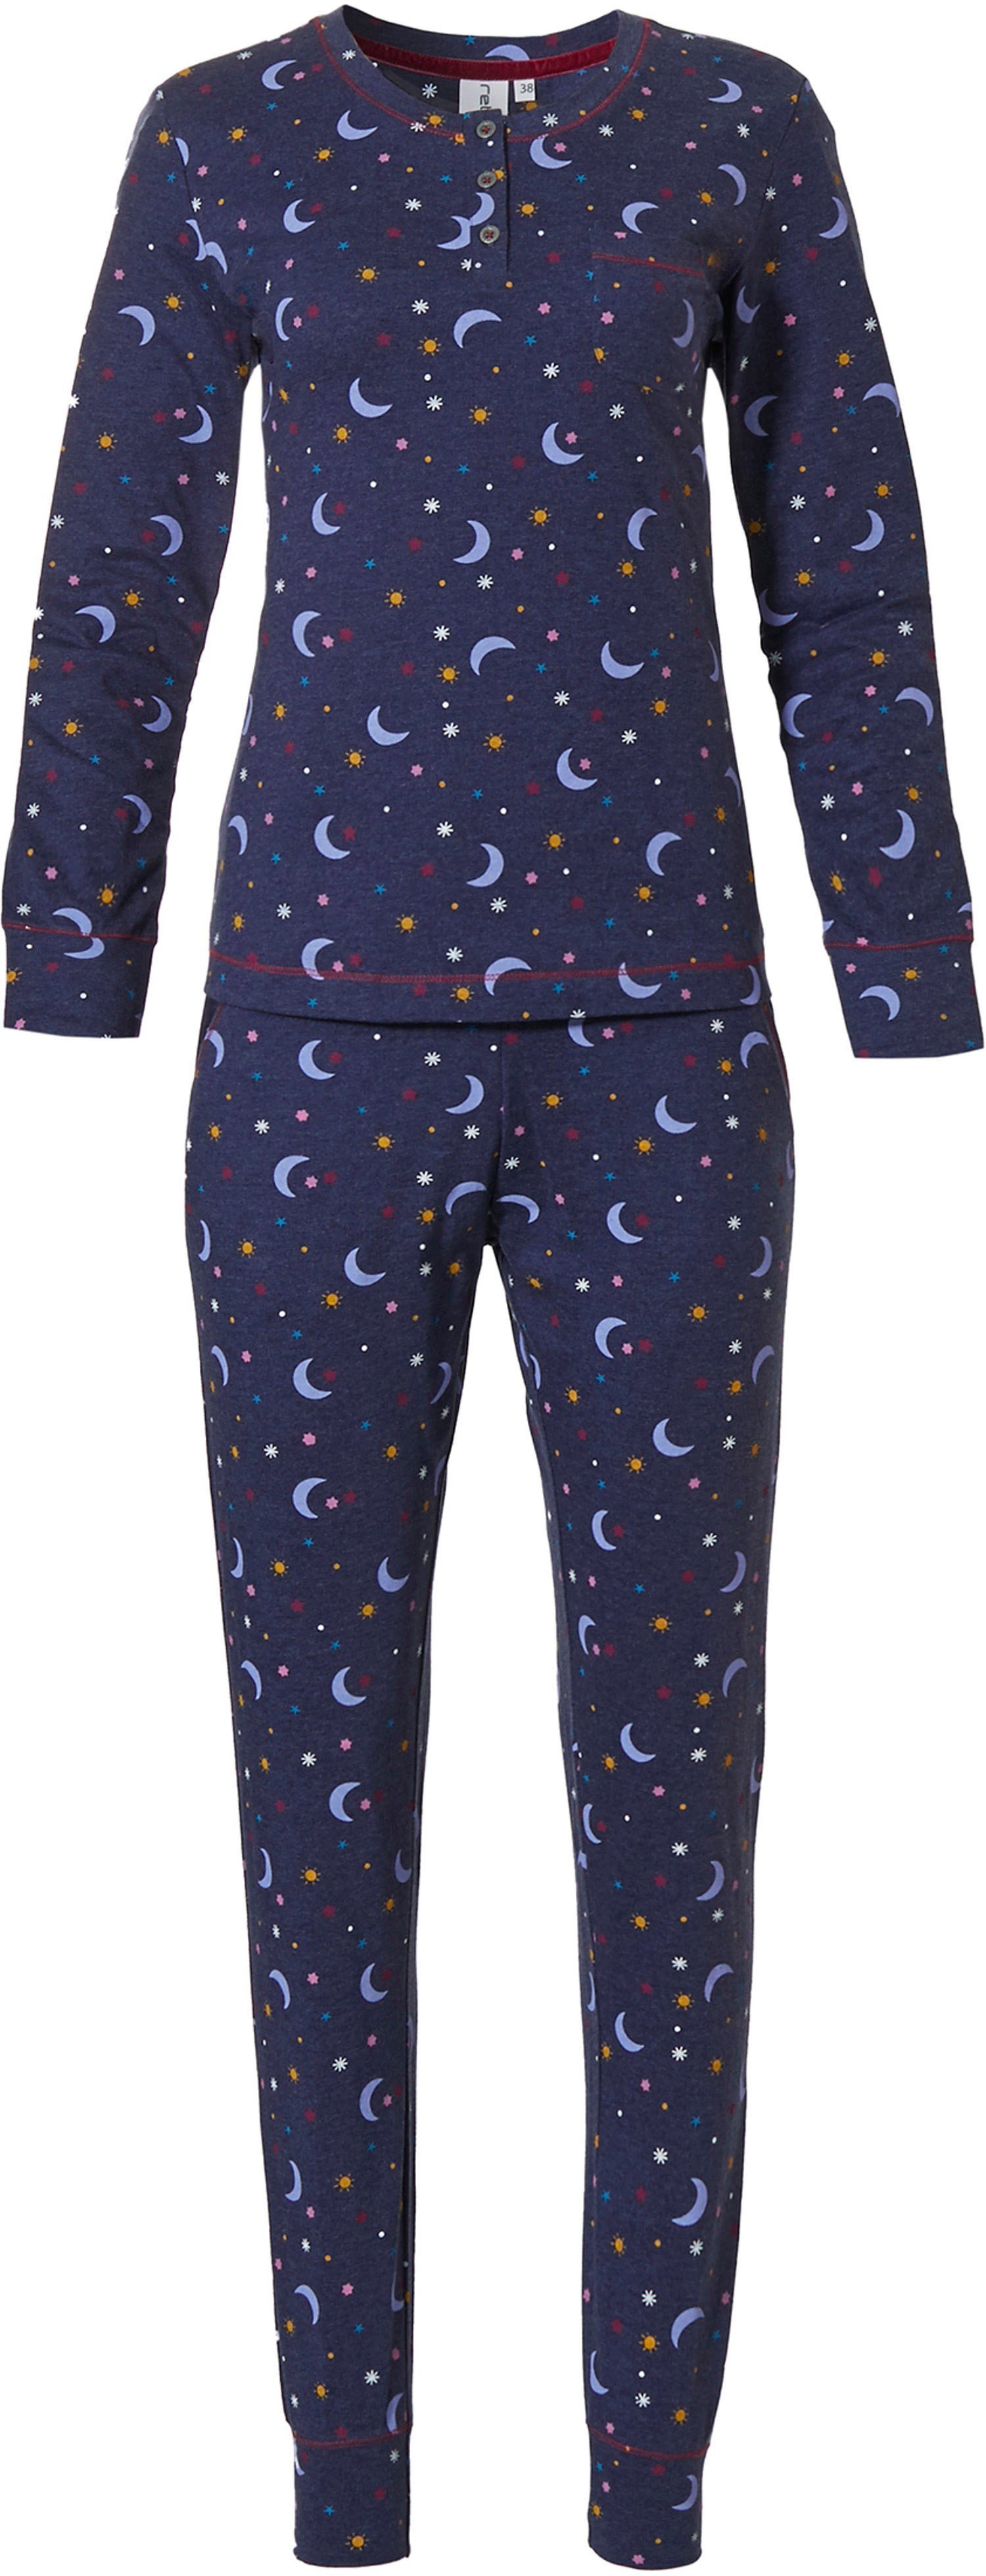 Rebelle Pyjama Rebelle Damen Schlafanzug (2 tlg) Sonne Mond und Sterne Allover